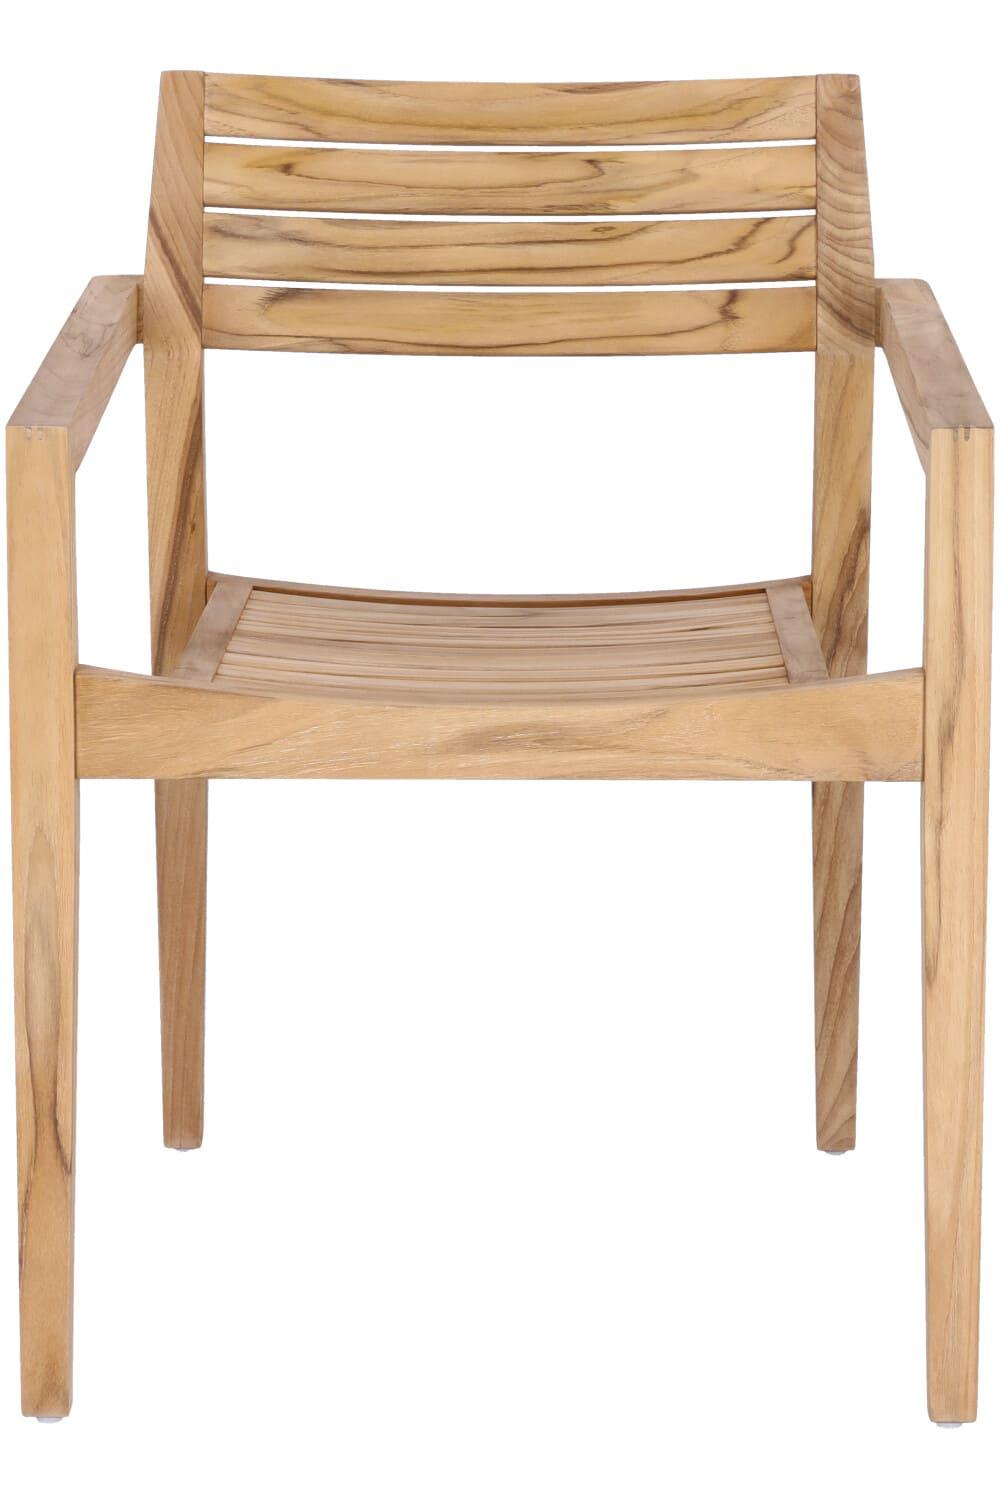 Abbildung arm chair Vitus Vorderansicht